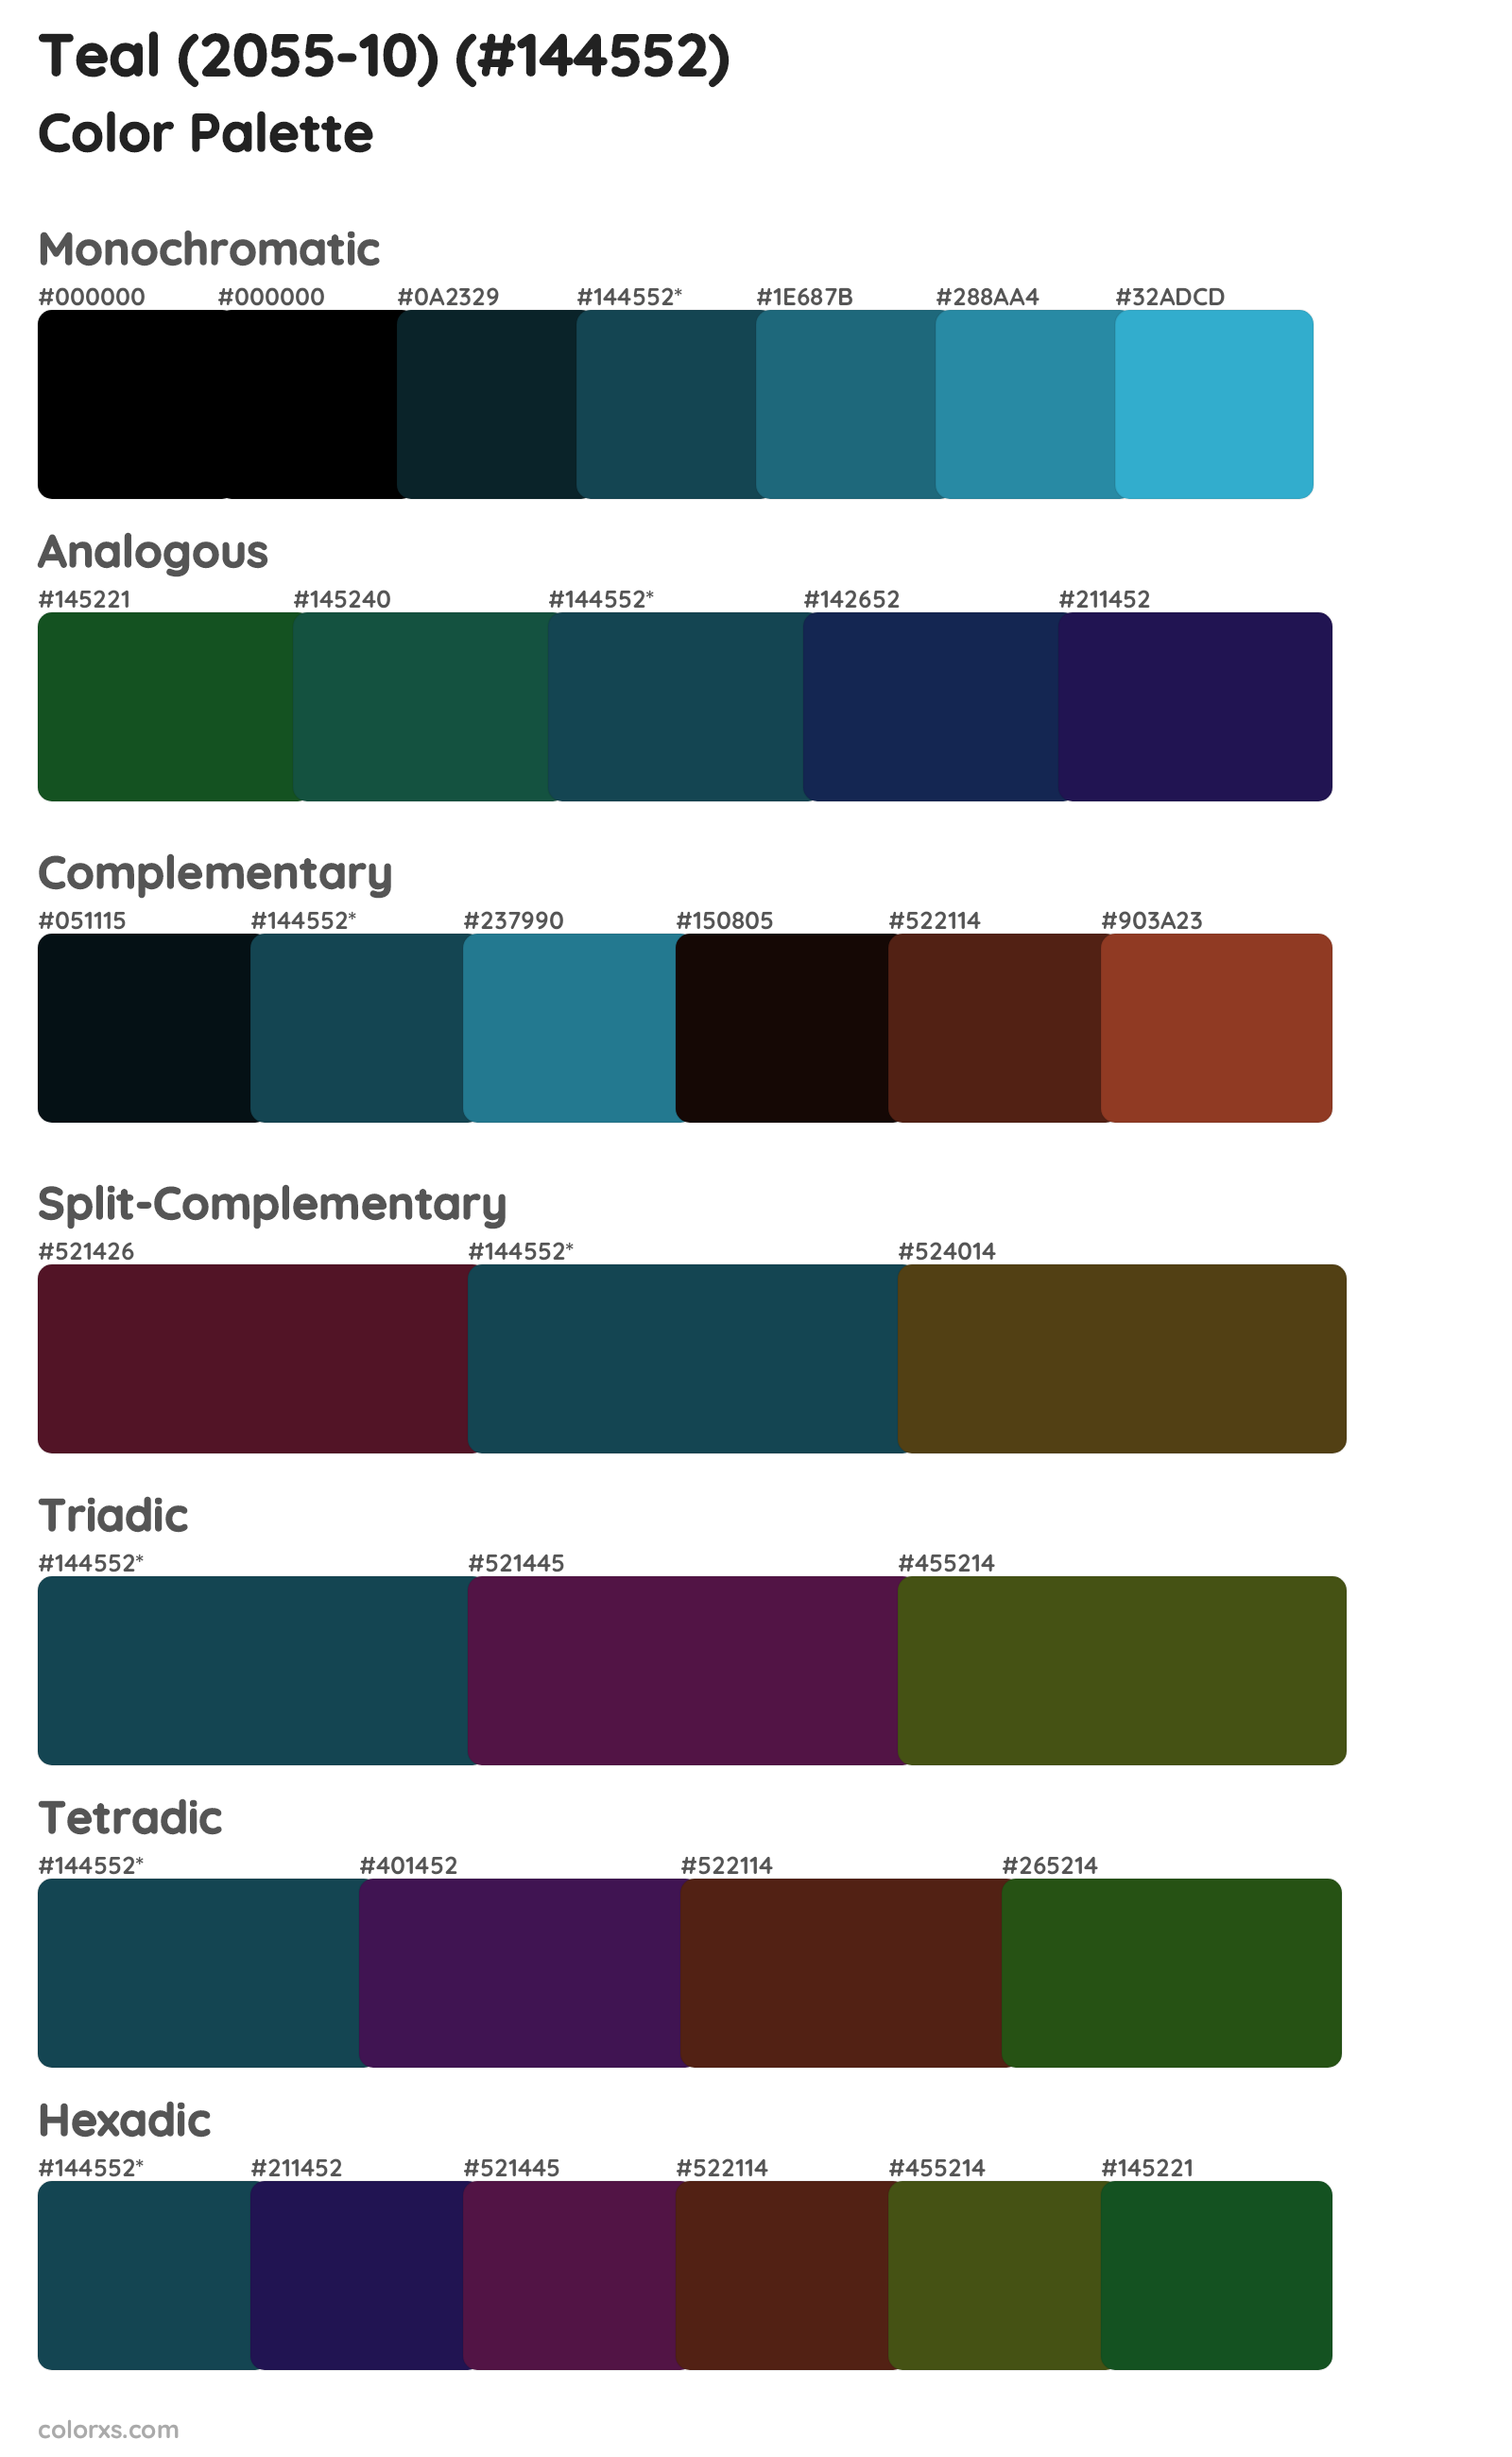 Teal (2055-10) Color Scheme Palettes